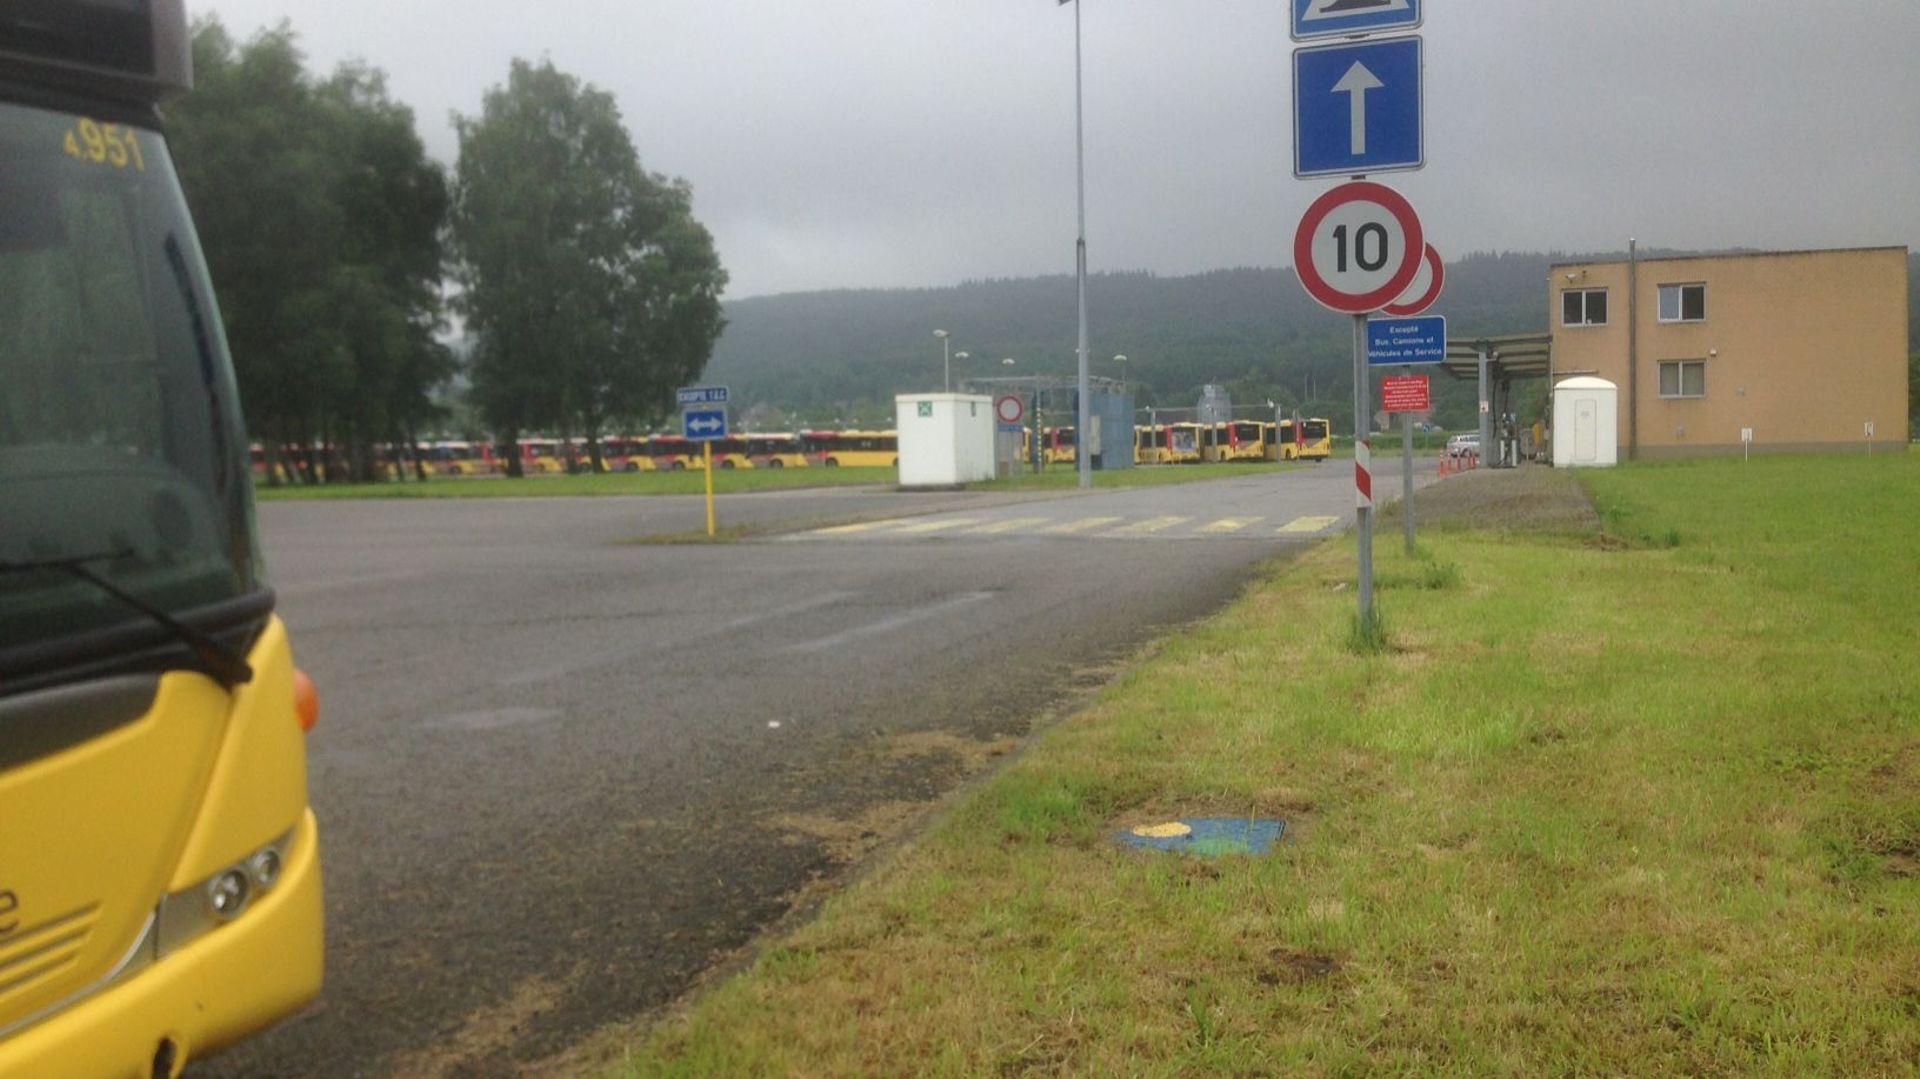 Le dépôt TEC de Malonne (Namur) était complètement paralysé ce mercredi après-midi par deux bus qui bloquaient le site.